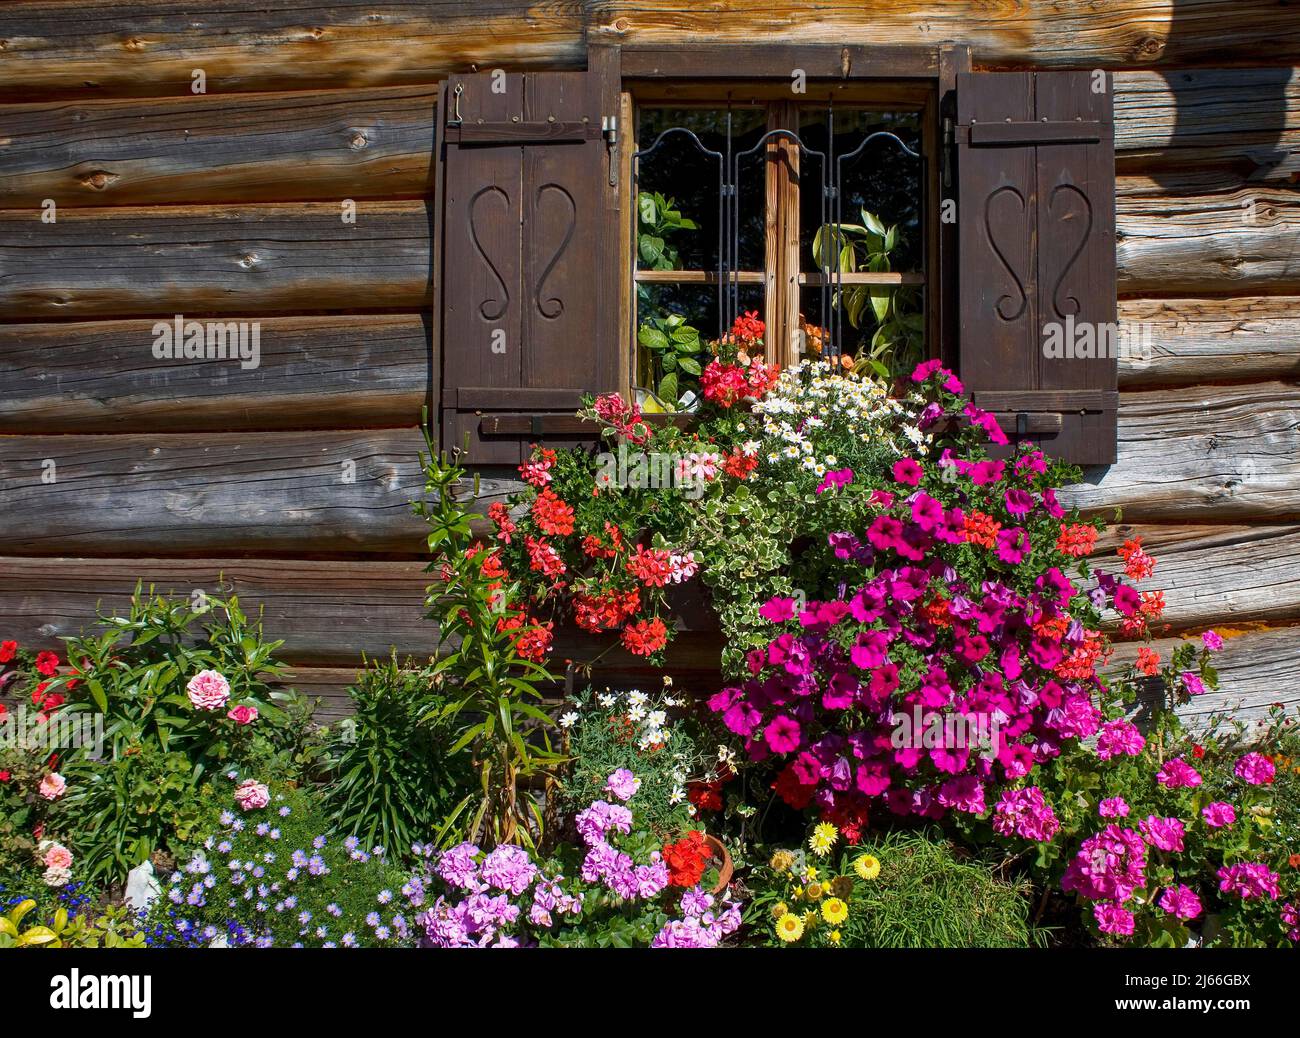 Hoelzernes Bauernhaus mit bunten Blumenfenster und Blumengarten, Holzfassade, Postalm, Salzkammergut, Land Salzbourg, Oesterreich Banque D'Images